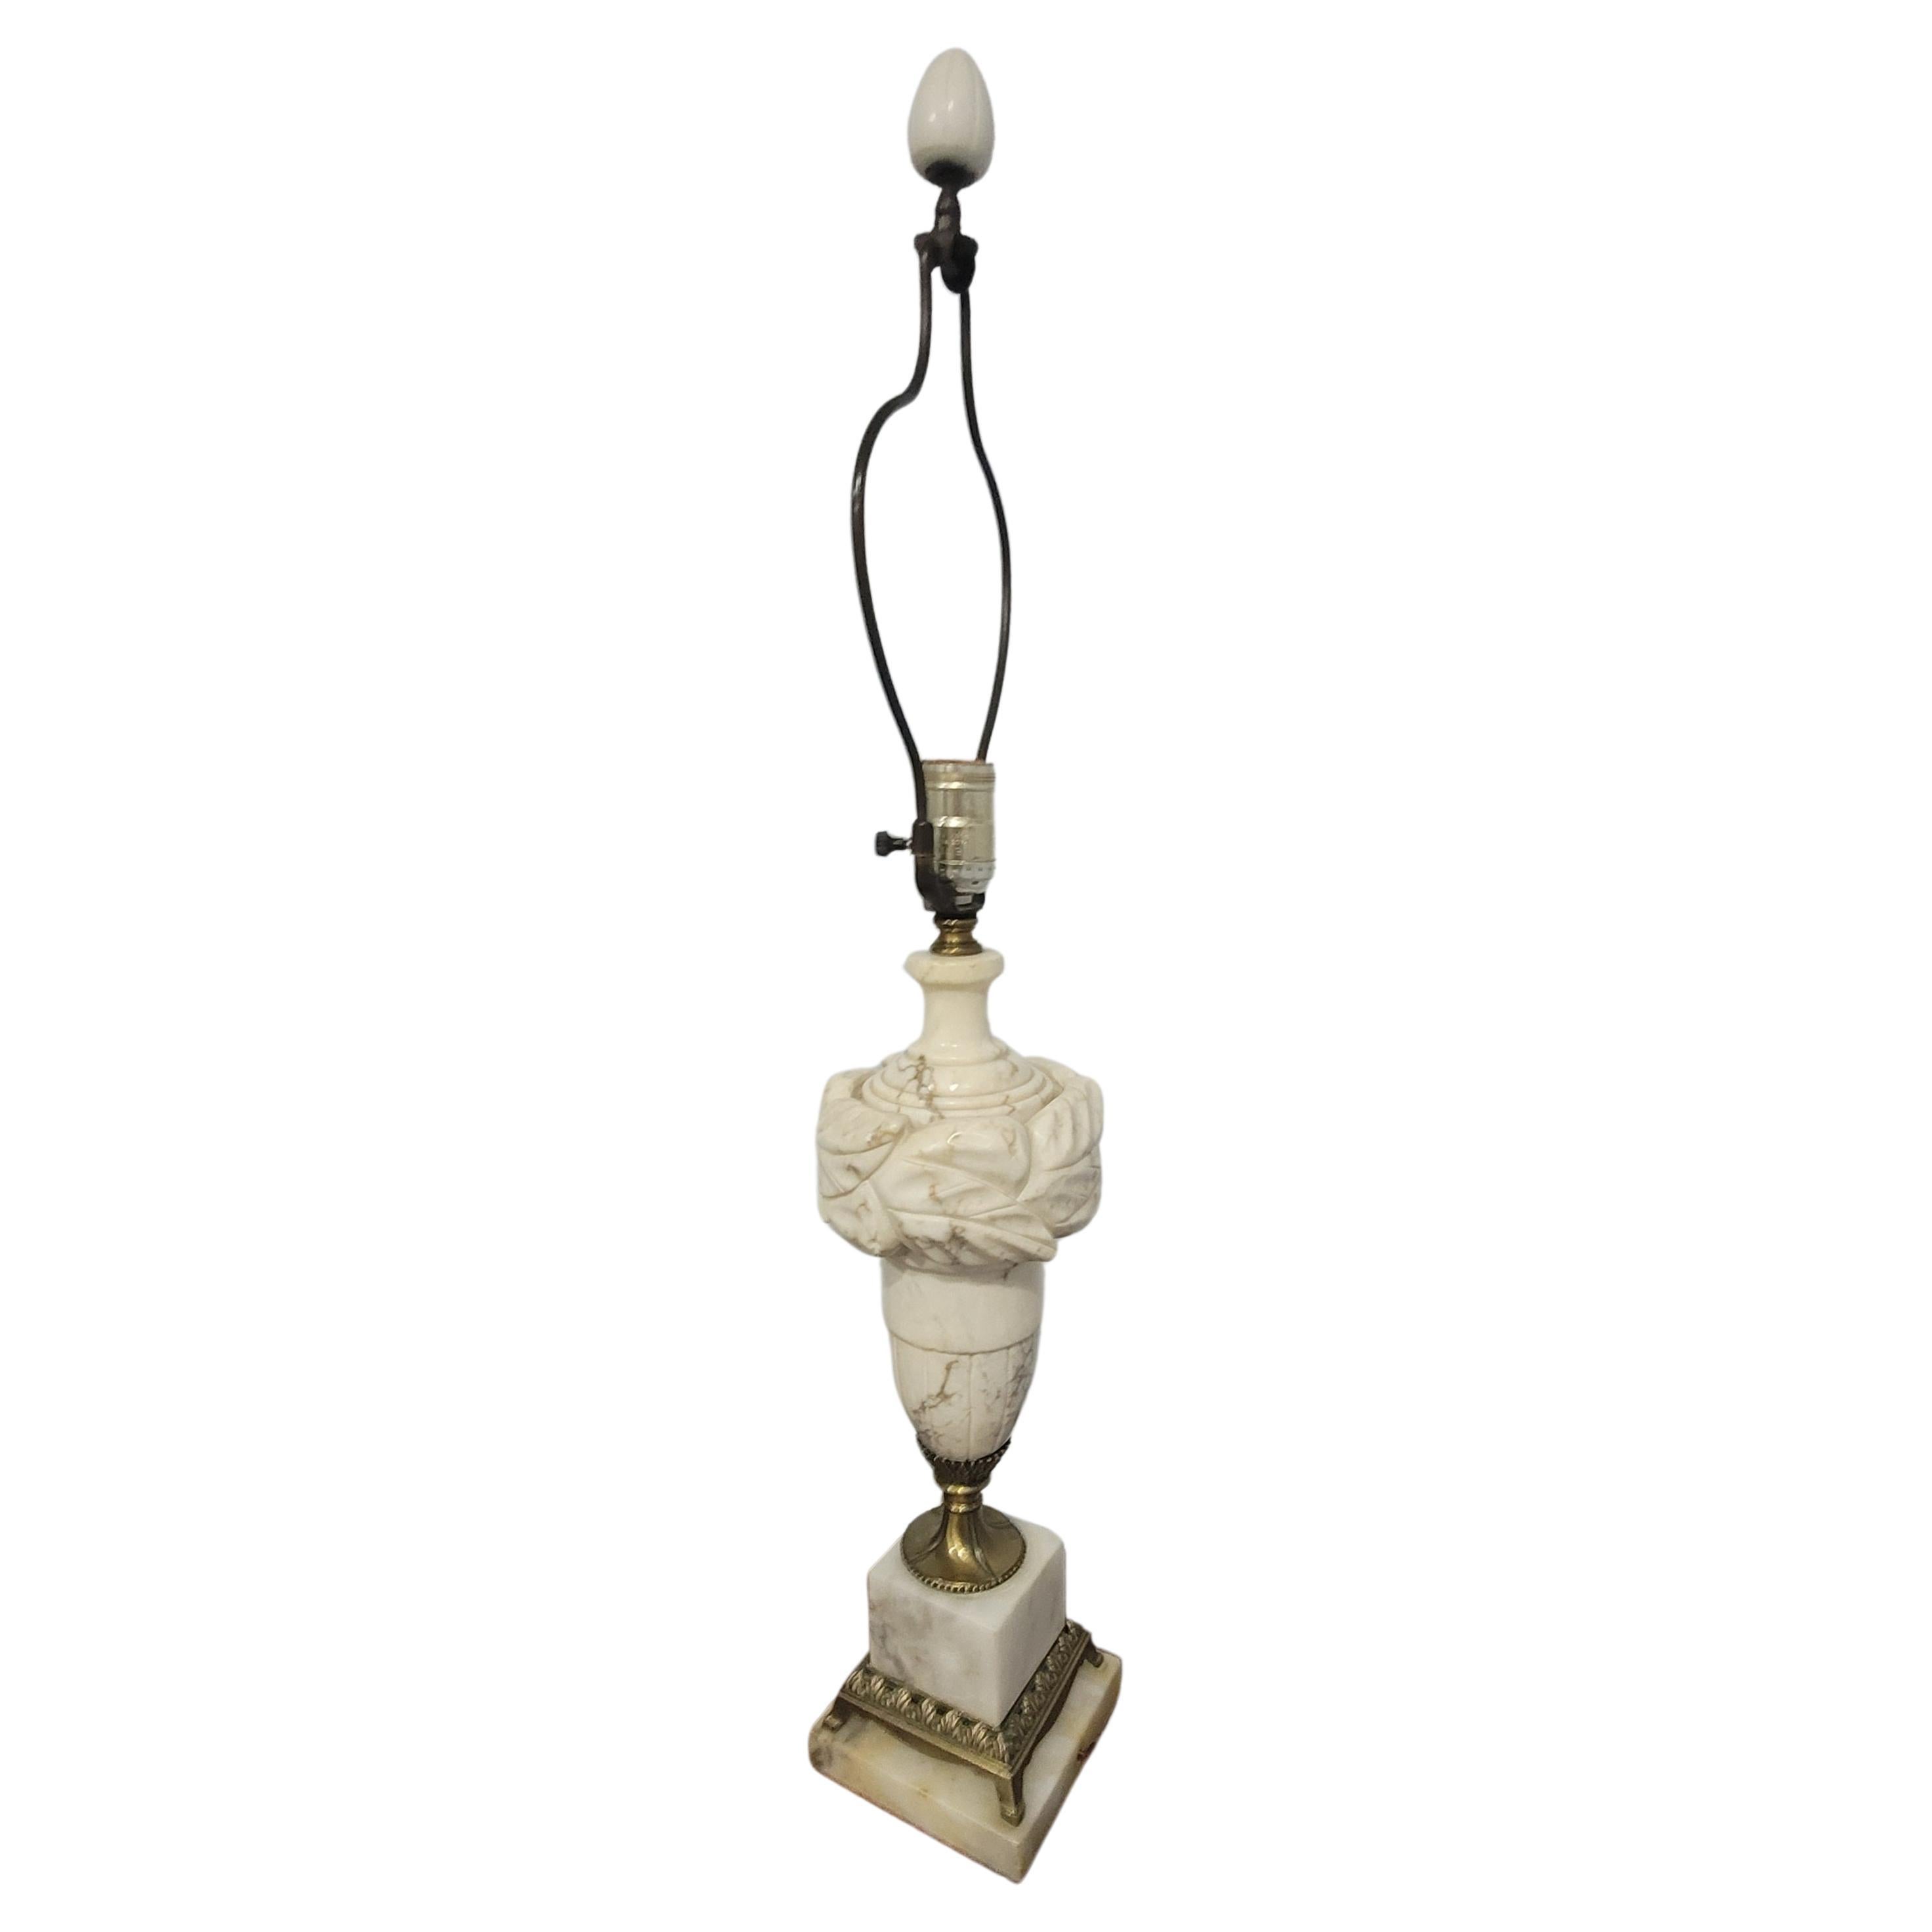 Lampe italienne des années 1960 en marbre carrara albâtre et laiton avec harpe et fleuron d'origine. 
Mesure 5 de large x 5 de profondeur x 30 de haut jusqu'au sommet de l'embout.
20 